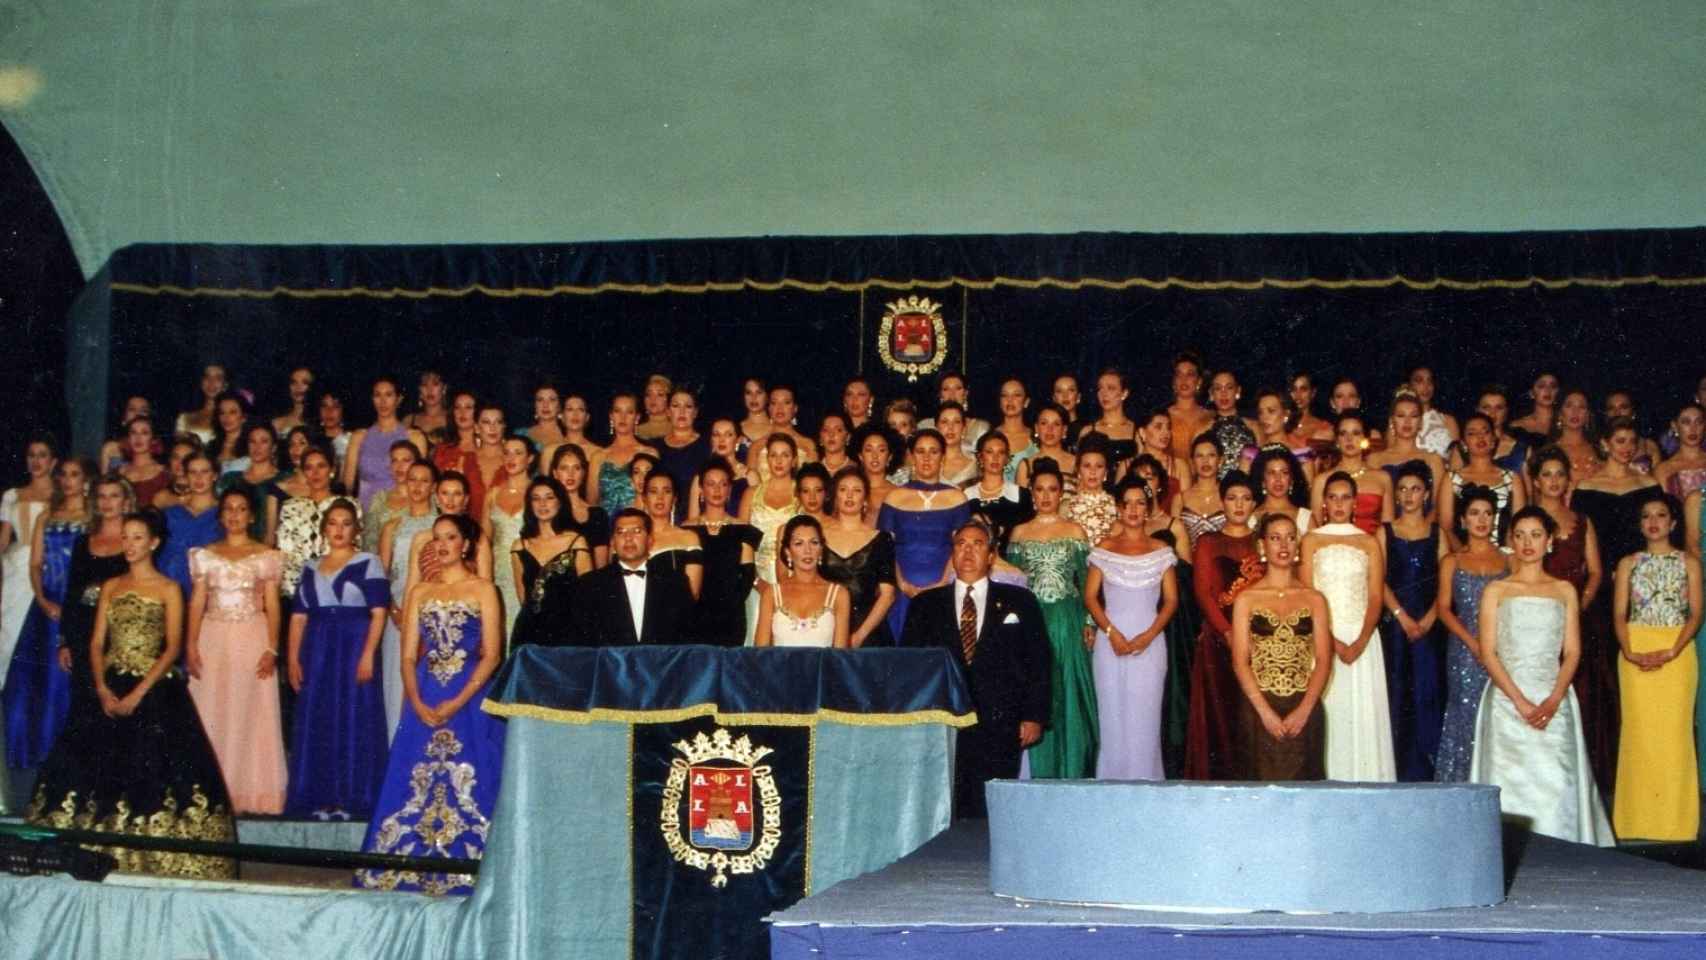 1997. Gala de Bellezas en el auditoio de la Explanada.